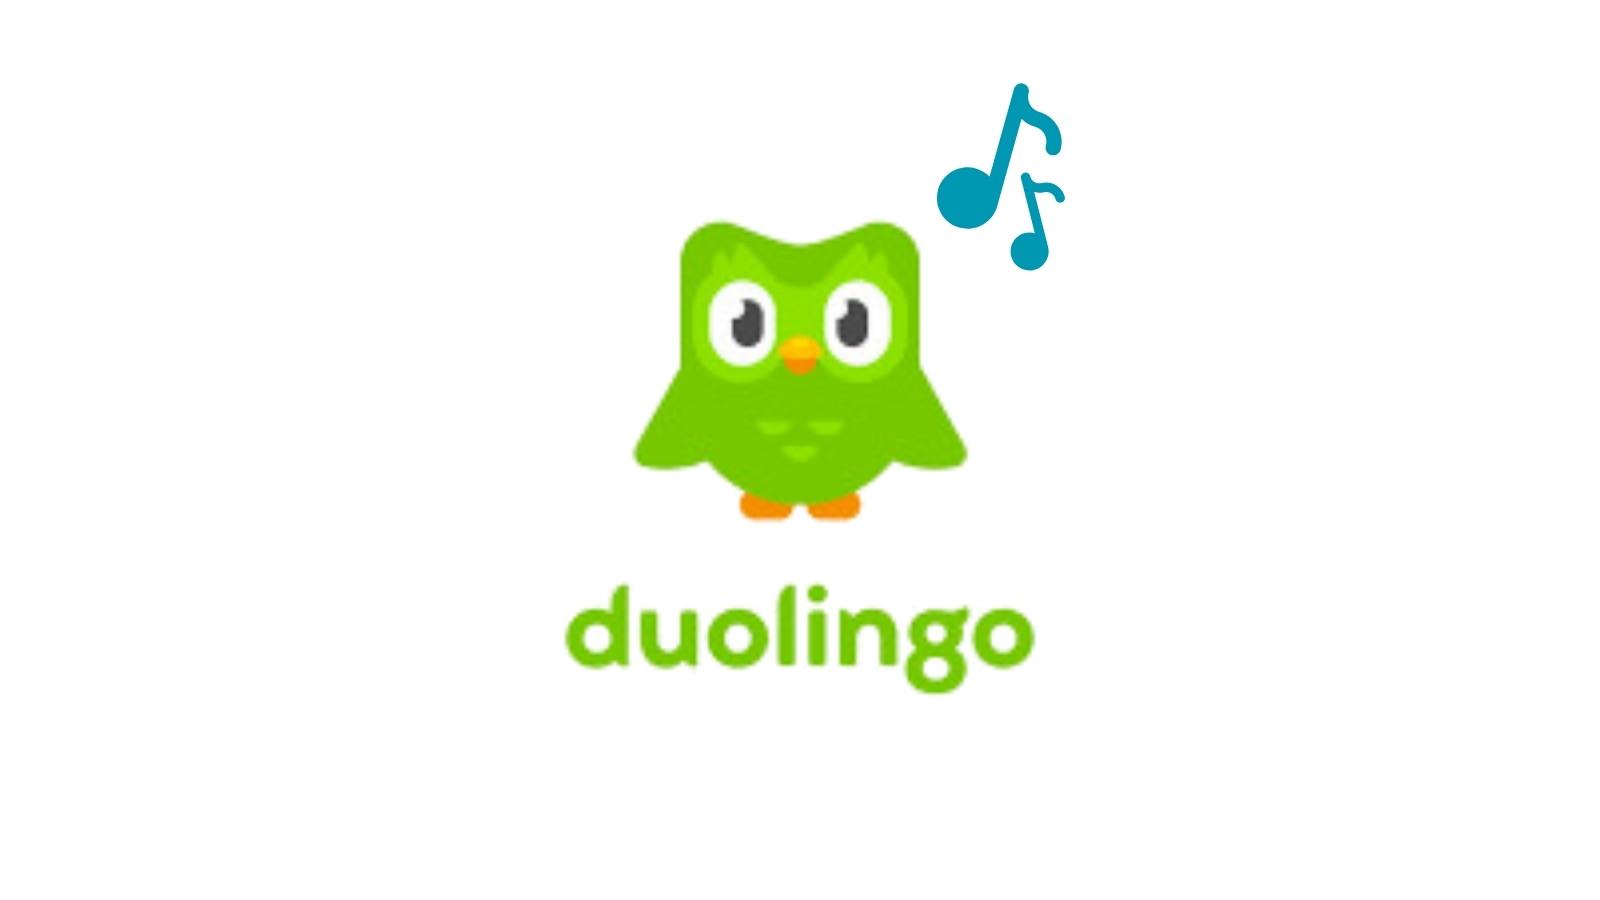 Dualingo müzik uygulaması geliştiriyor.